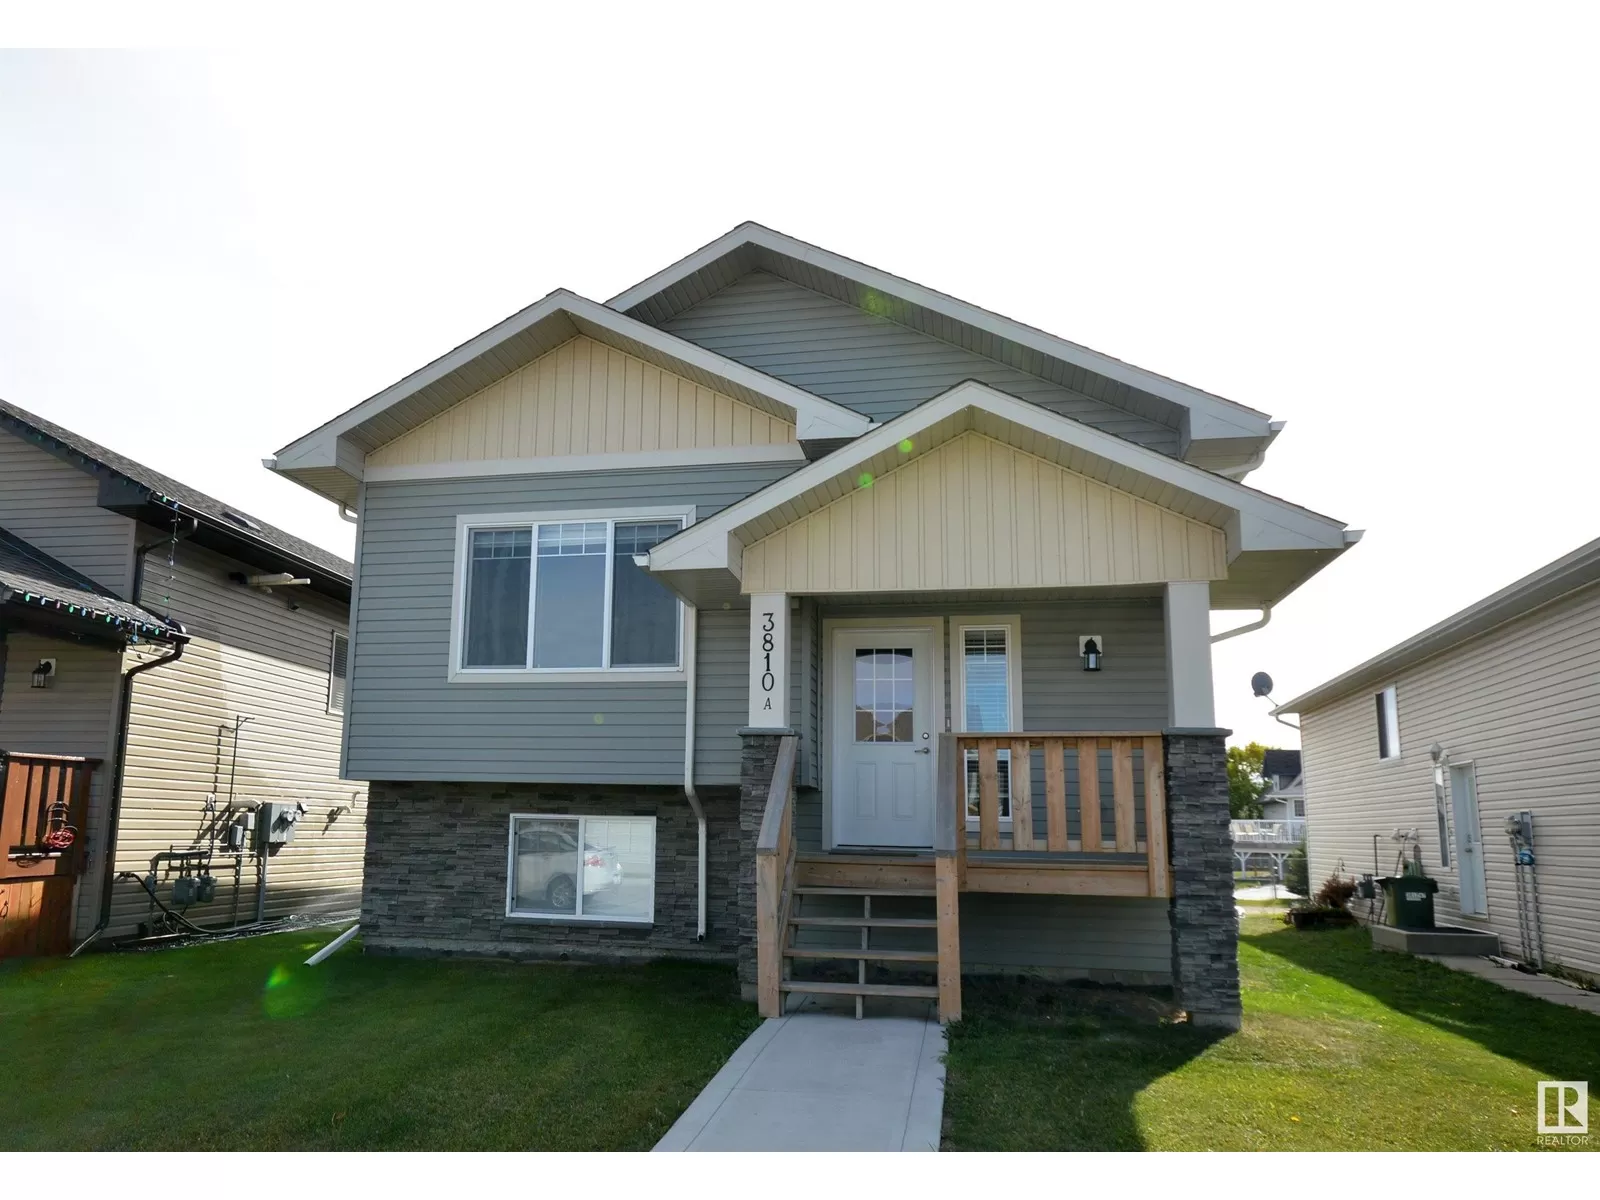 Duplex for rent: 3810 47 Av, Bonnyville Town, Alberta T9N 0E1